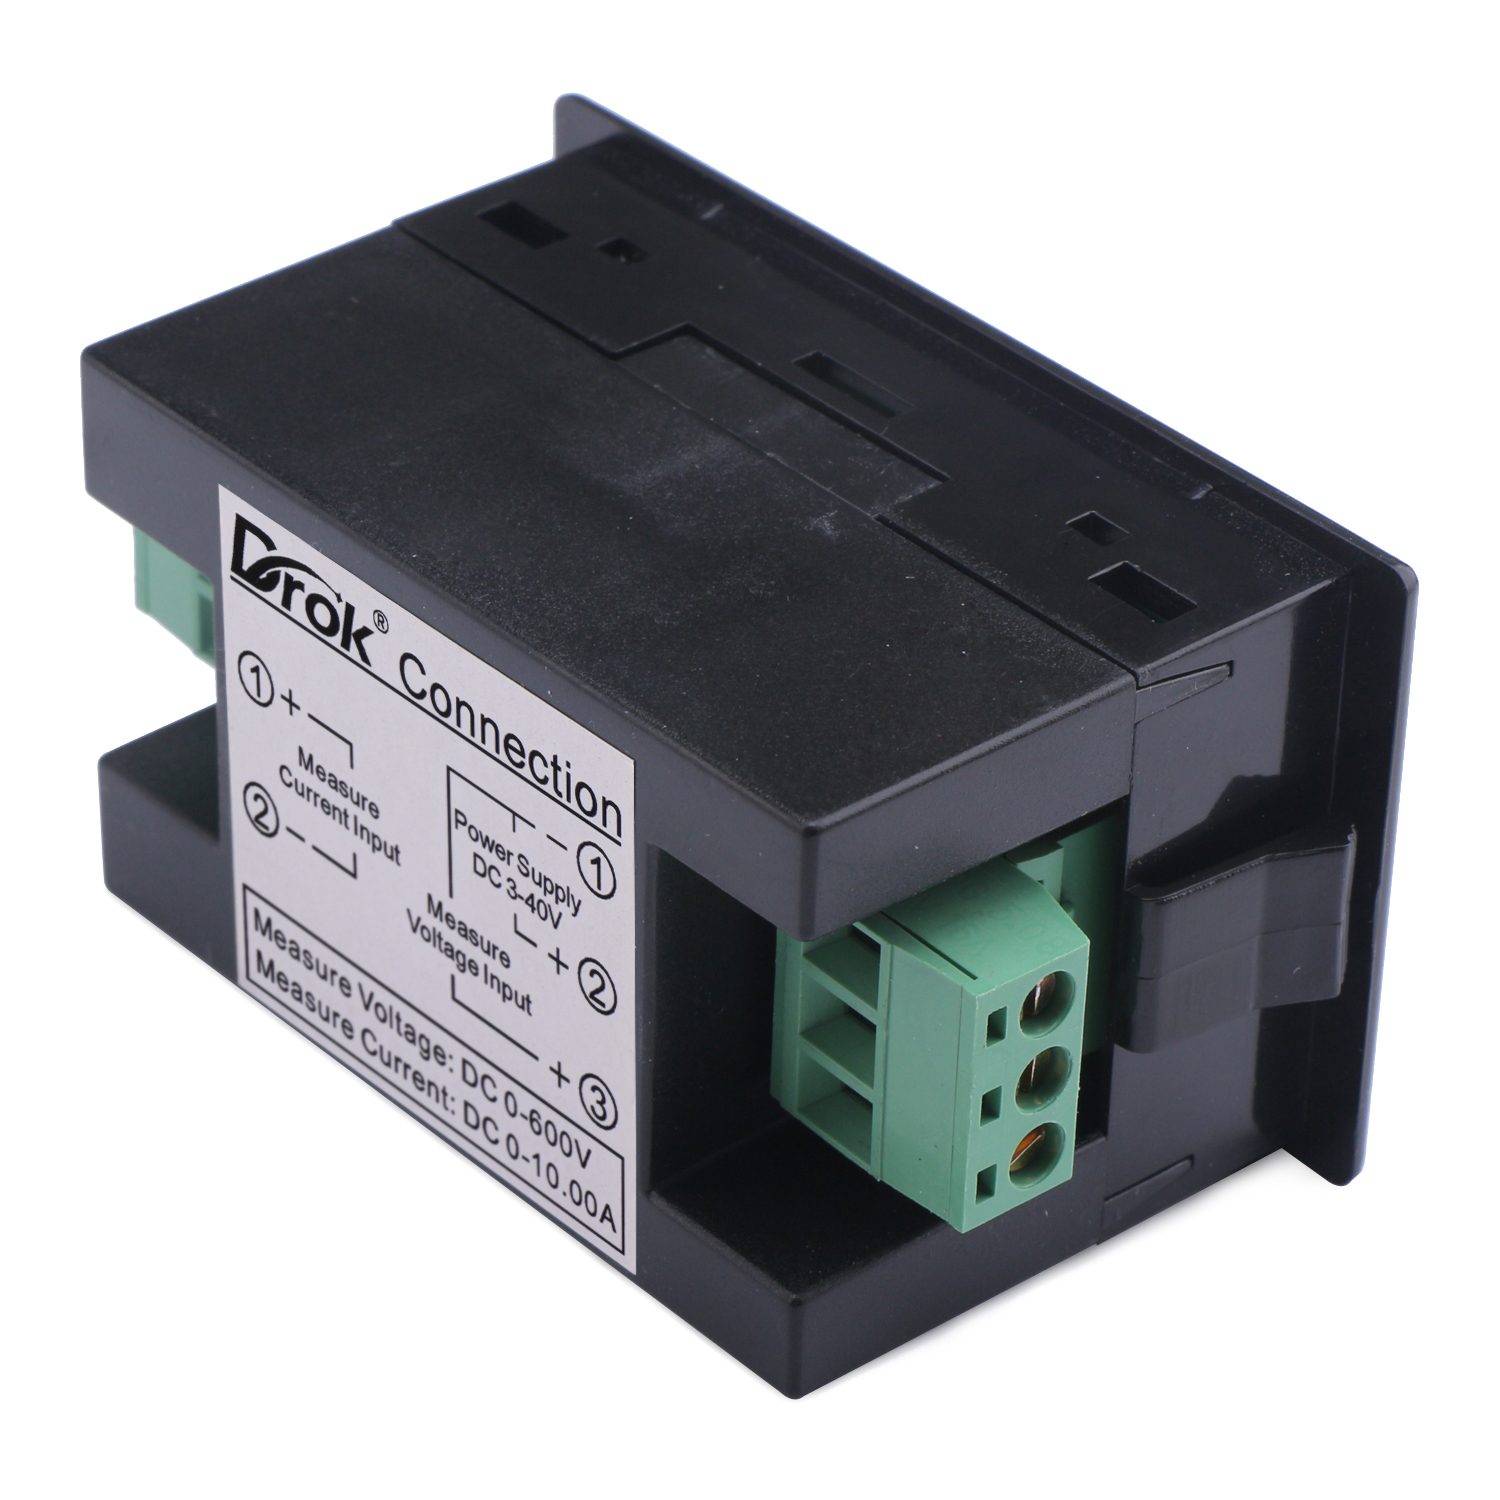 DC 0~600V/10A Volt Meter Ampere Meter 2in1 Voltage Current Monitor 